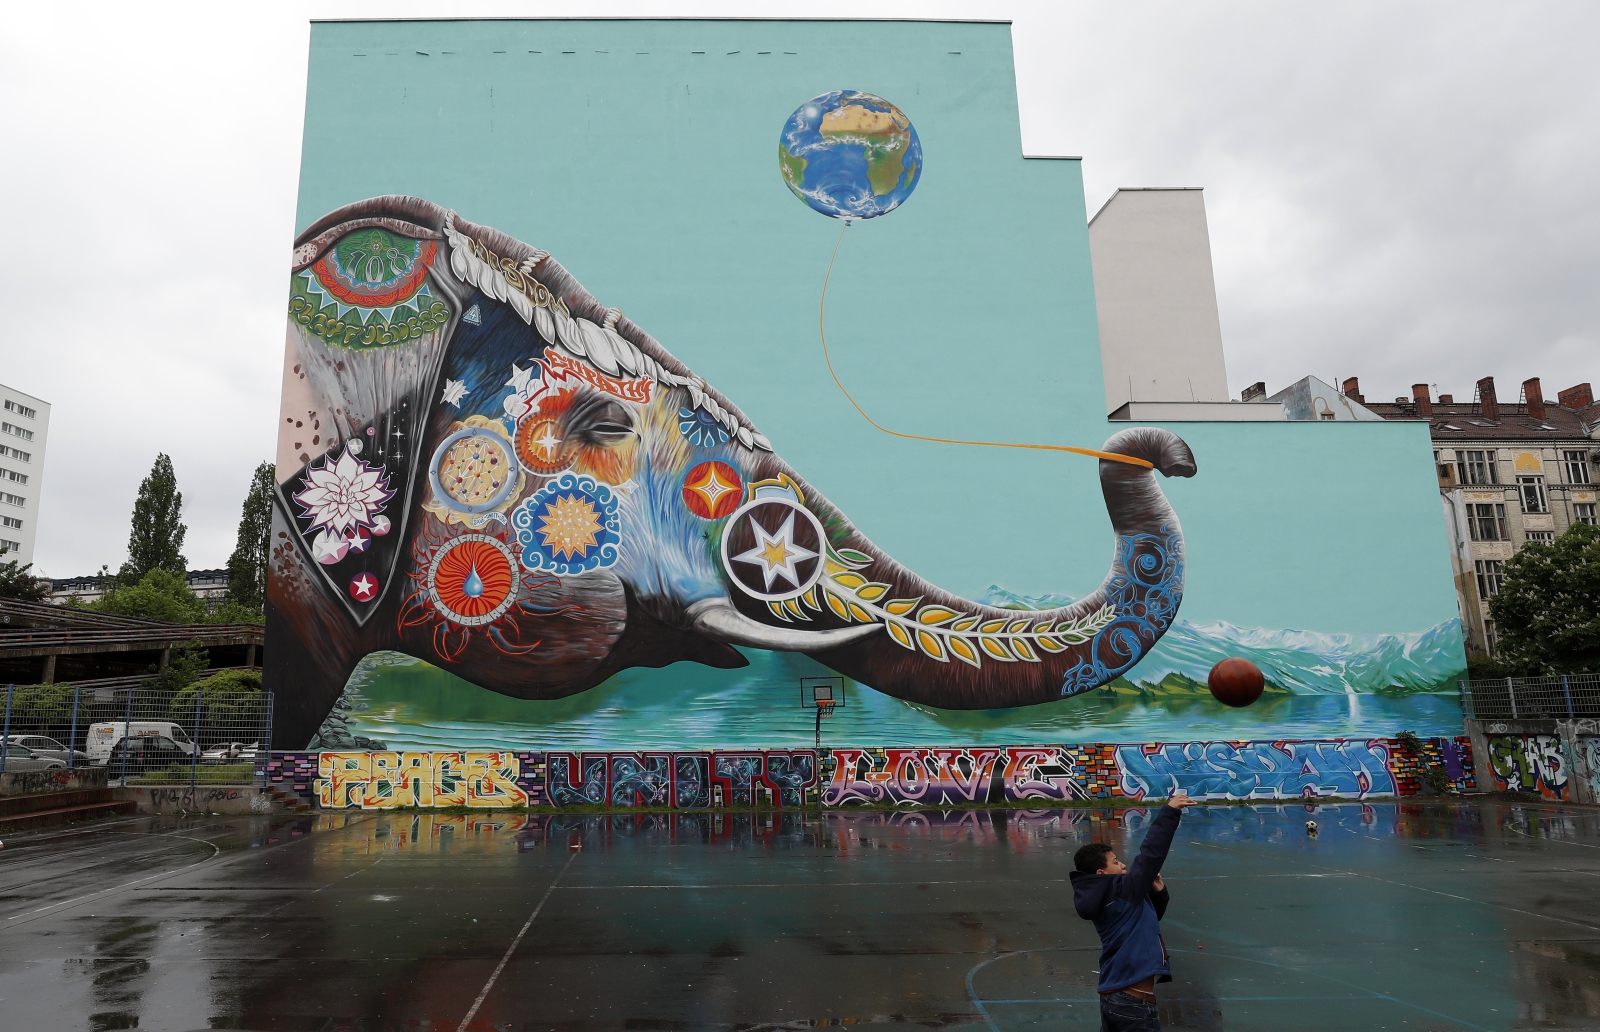 Chłopiec bawi się naprzeciwko ogromnego graffiti przedstawiającego słonia, Berlin, Niemcy.